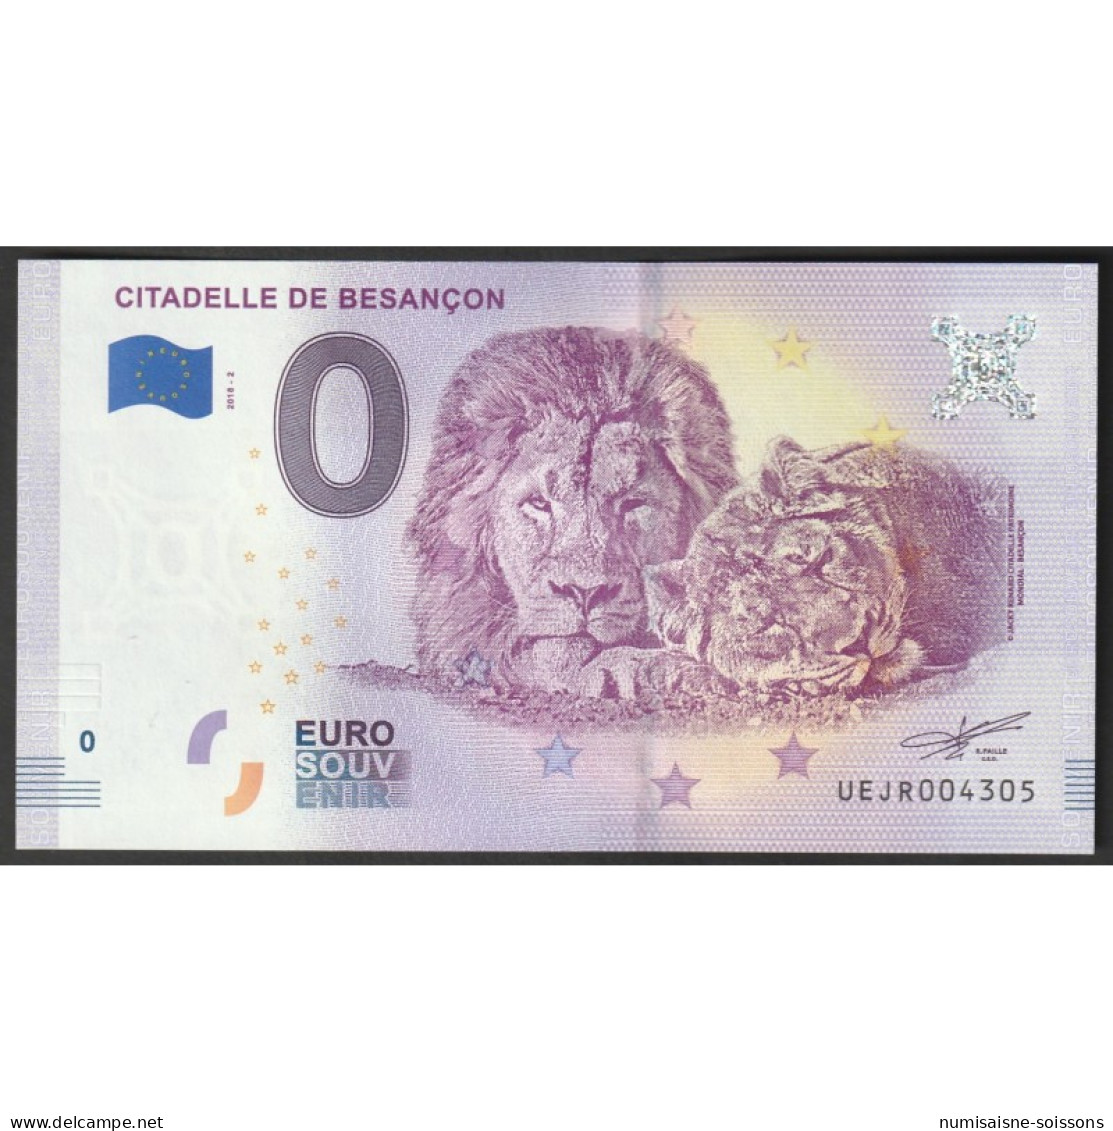 FRANCE - 25000 - BESANCON - LA CITADELLE - 2018-2 - LIONS - Essais Privés / Non-officiels